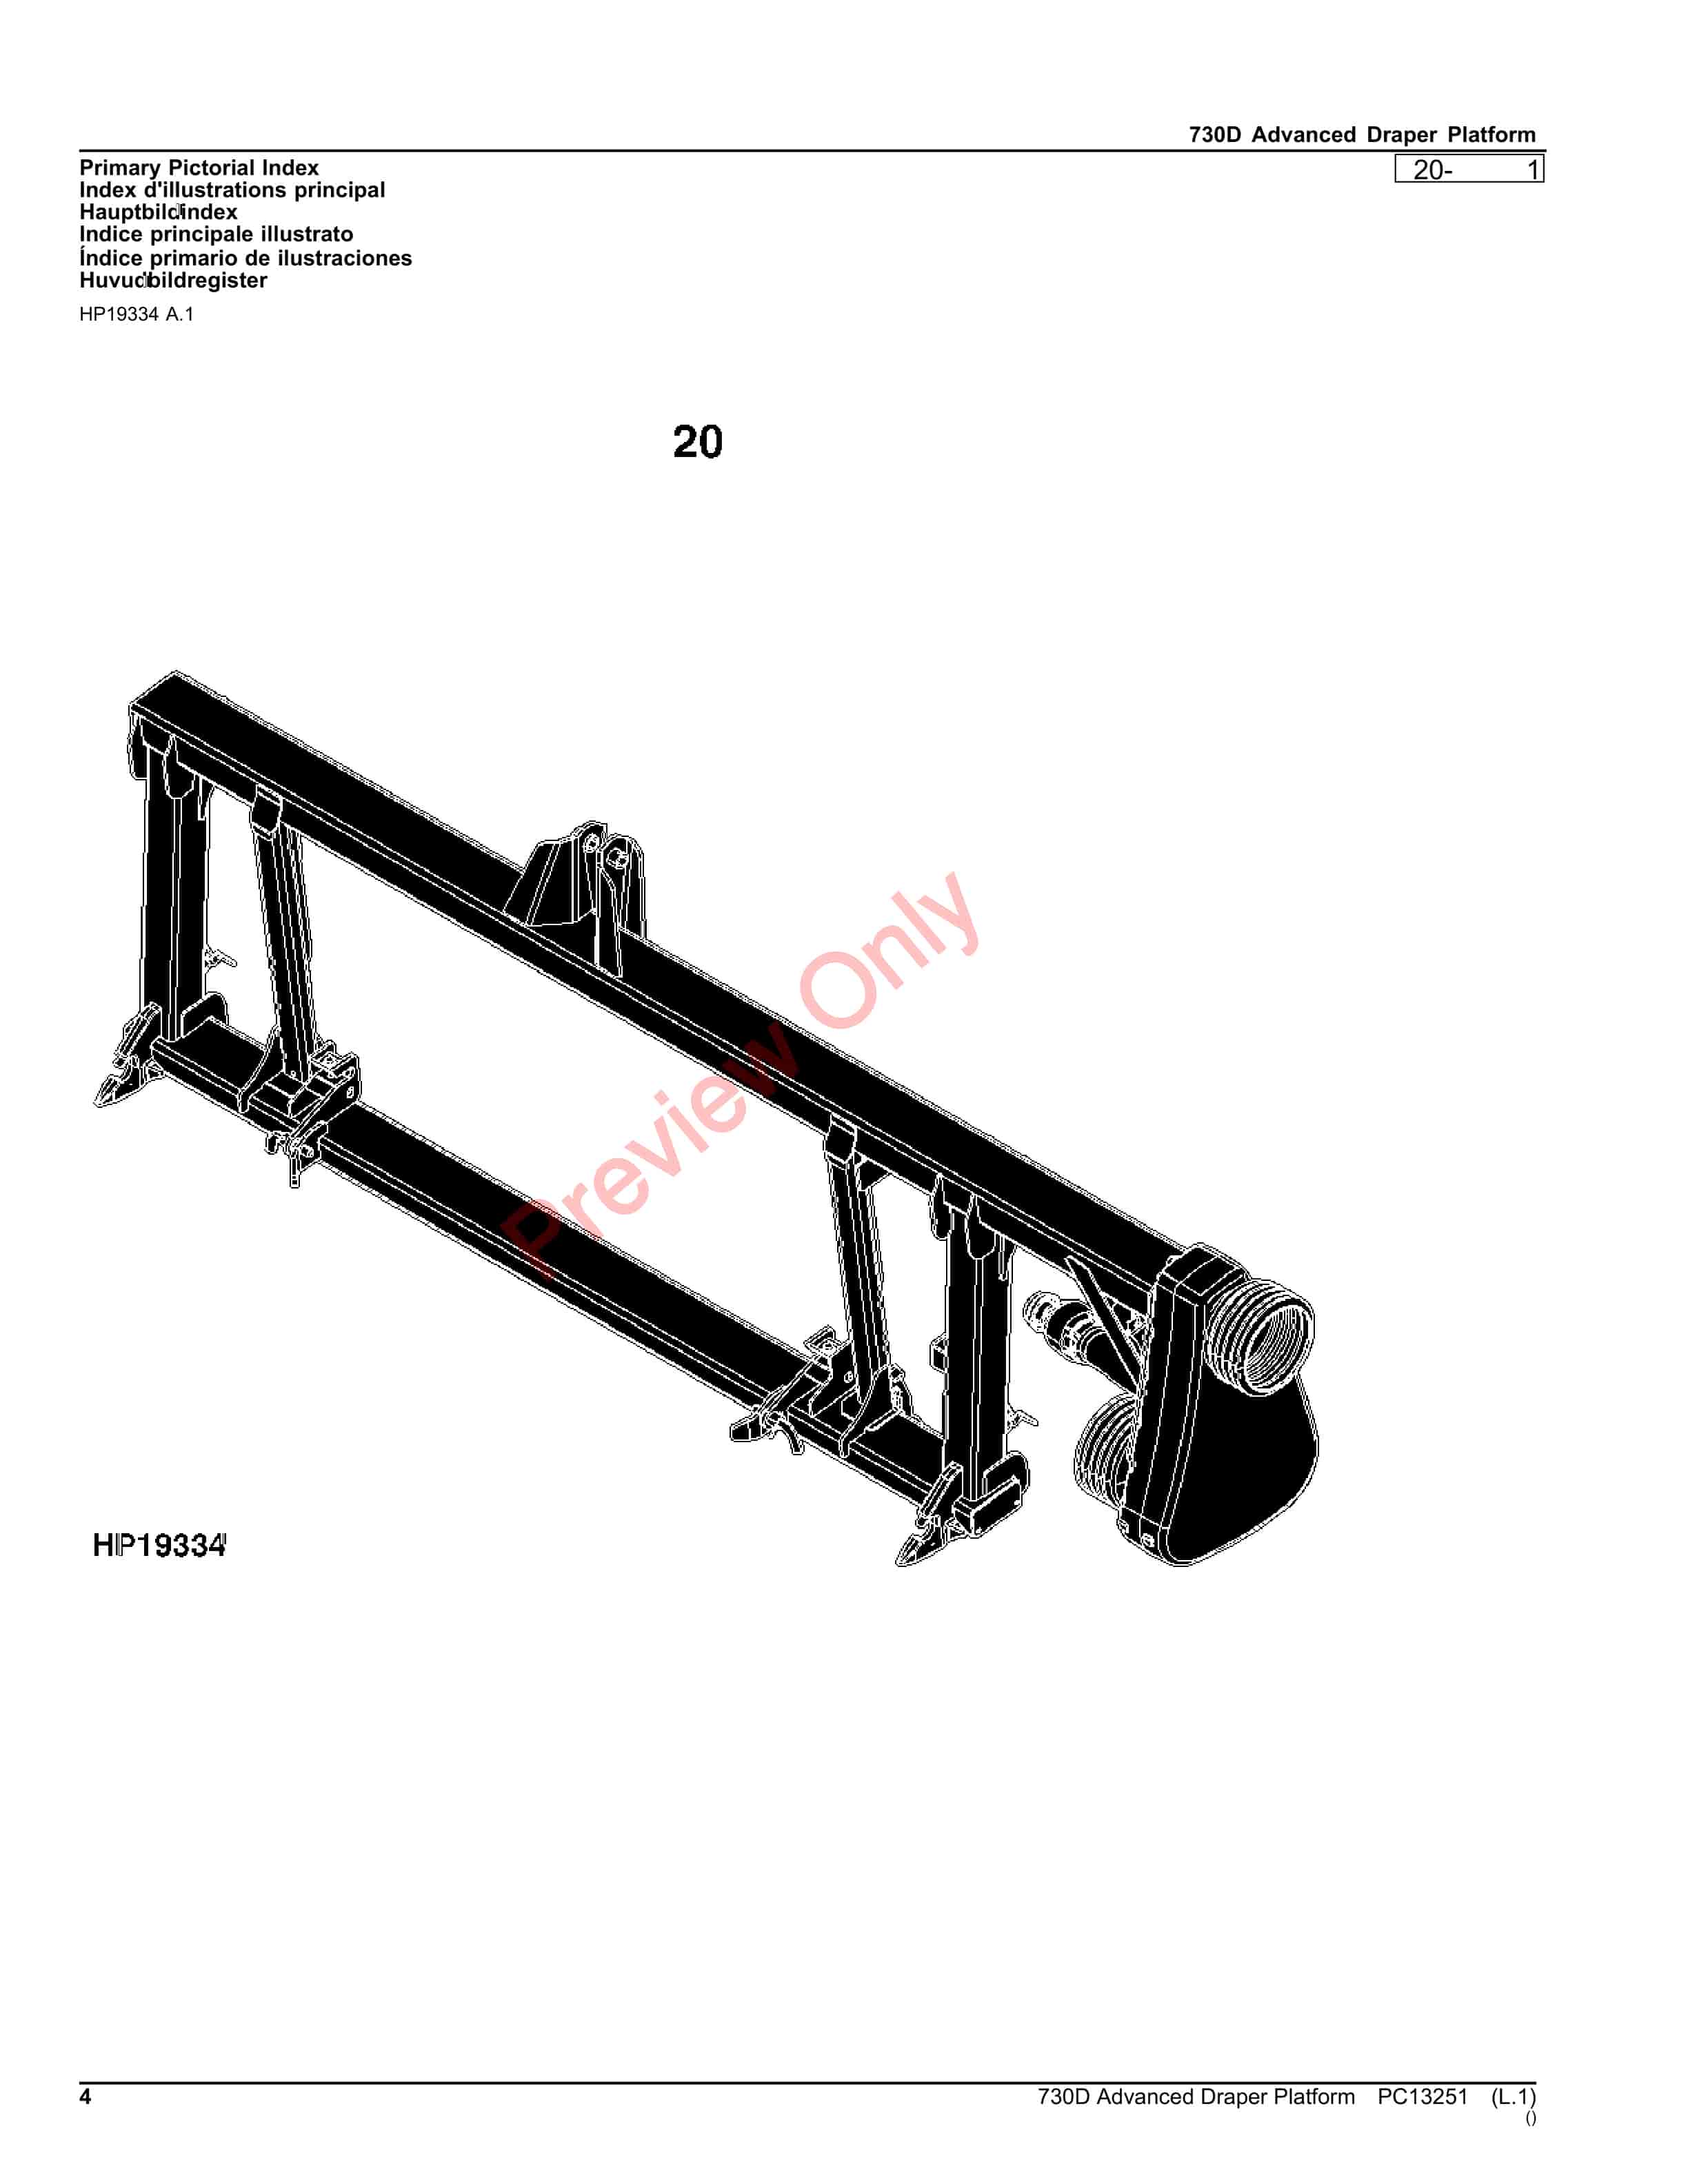 John Deere 730D Advanced Draper Platform Parts Catalog PC13251 26OCT23-4